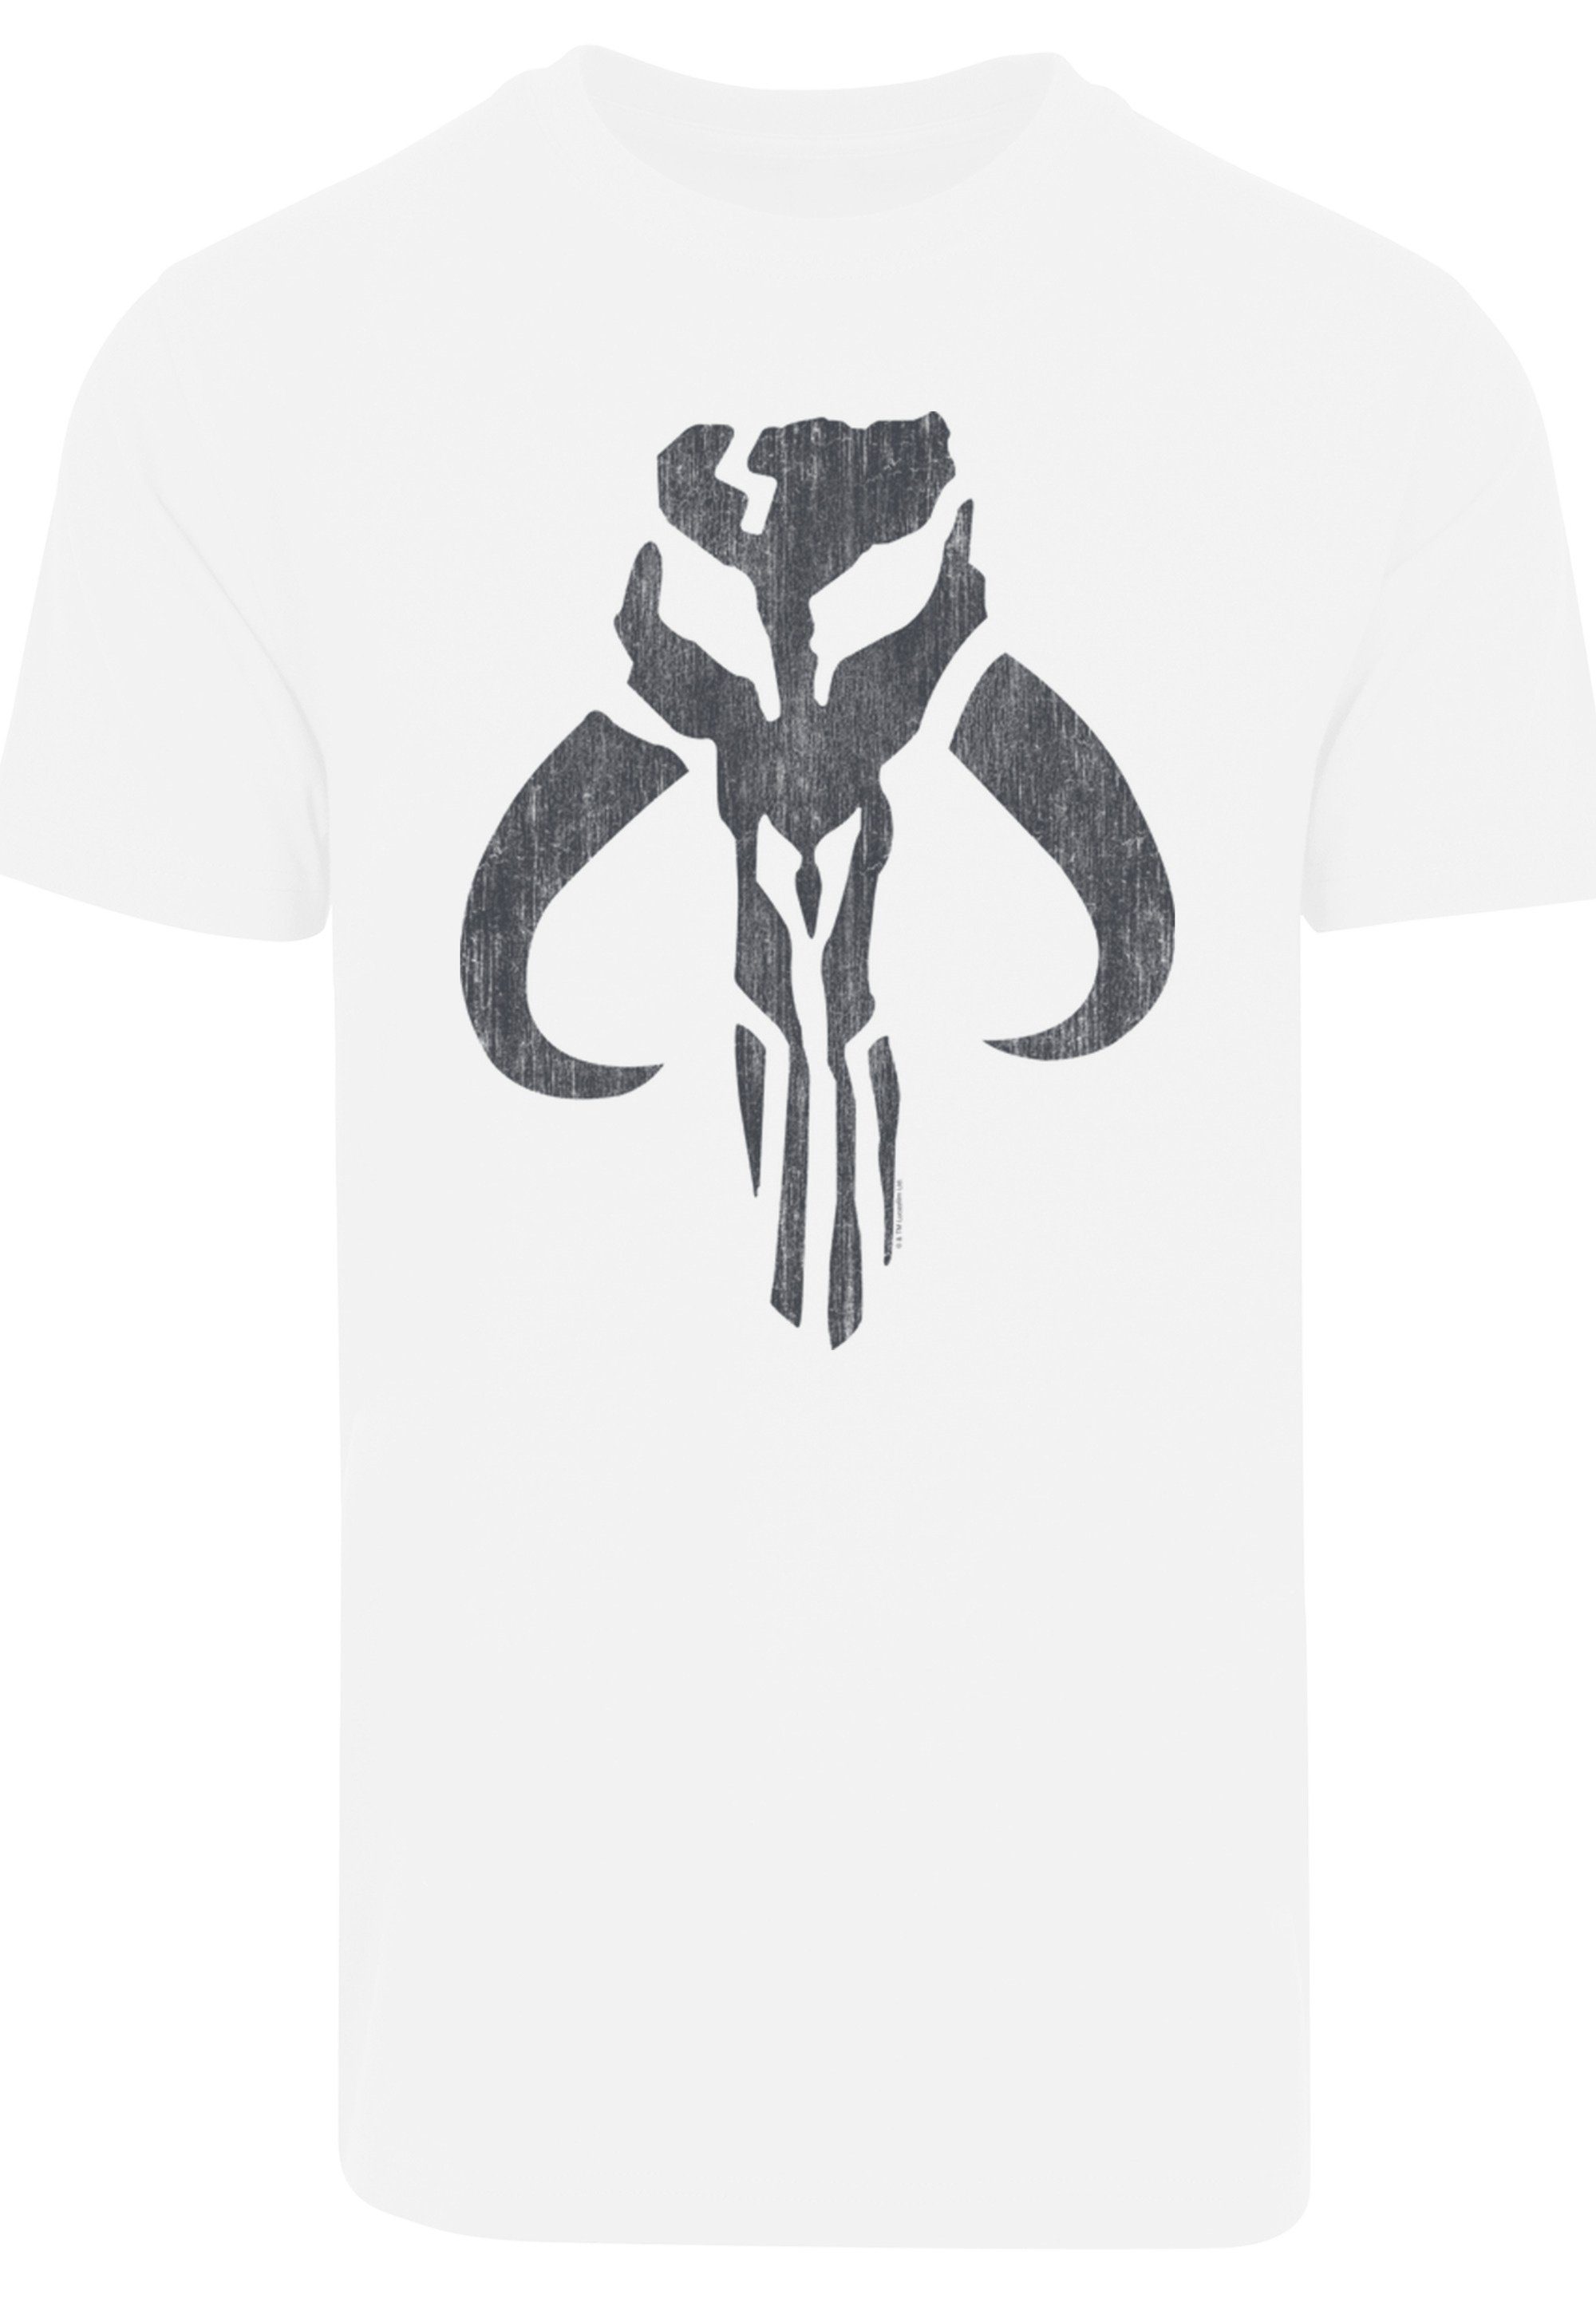 T-Shirt Banther Skull Print F4NT4STIC Wars Mandalorian weiß Star